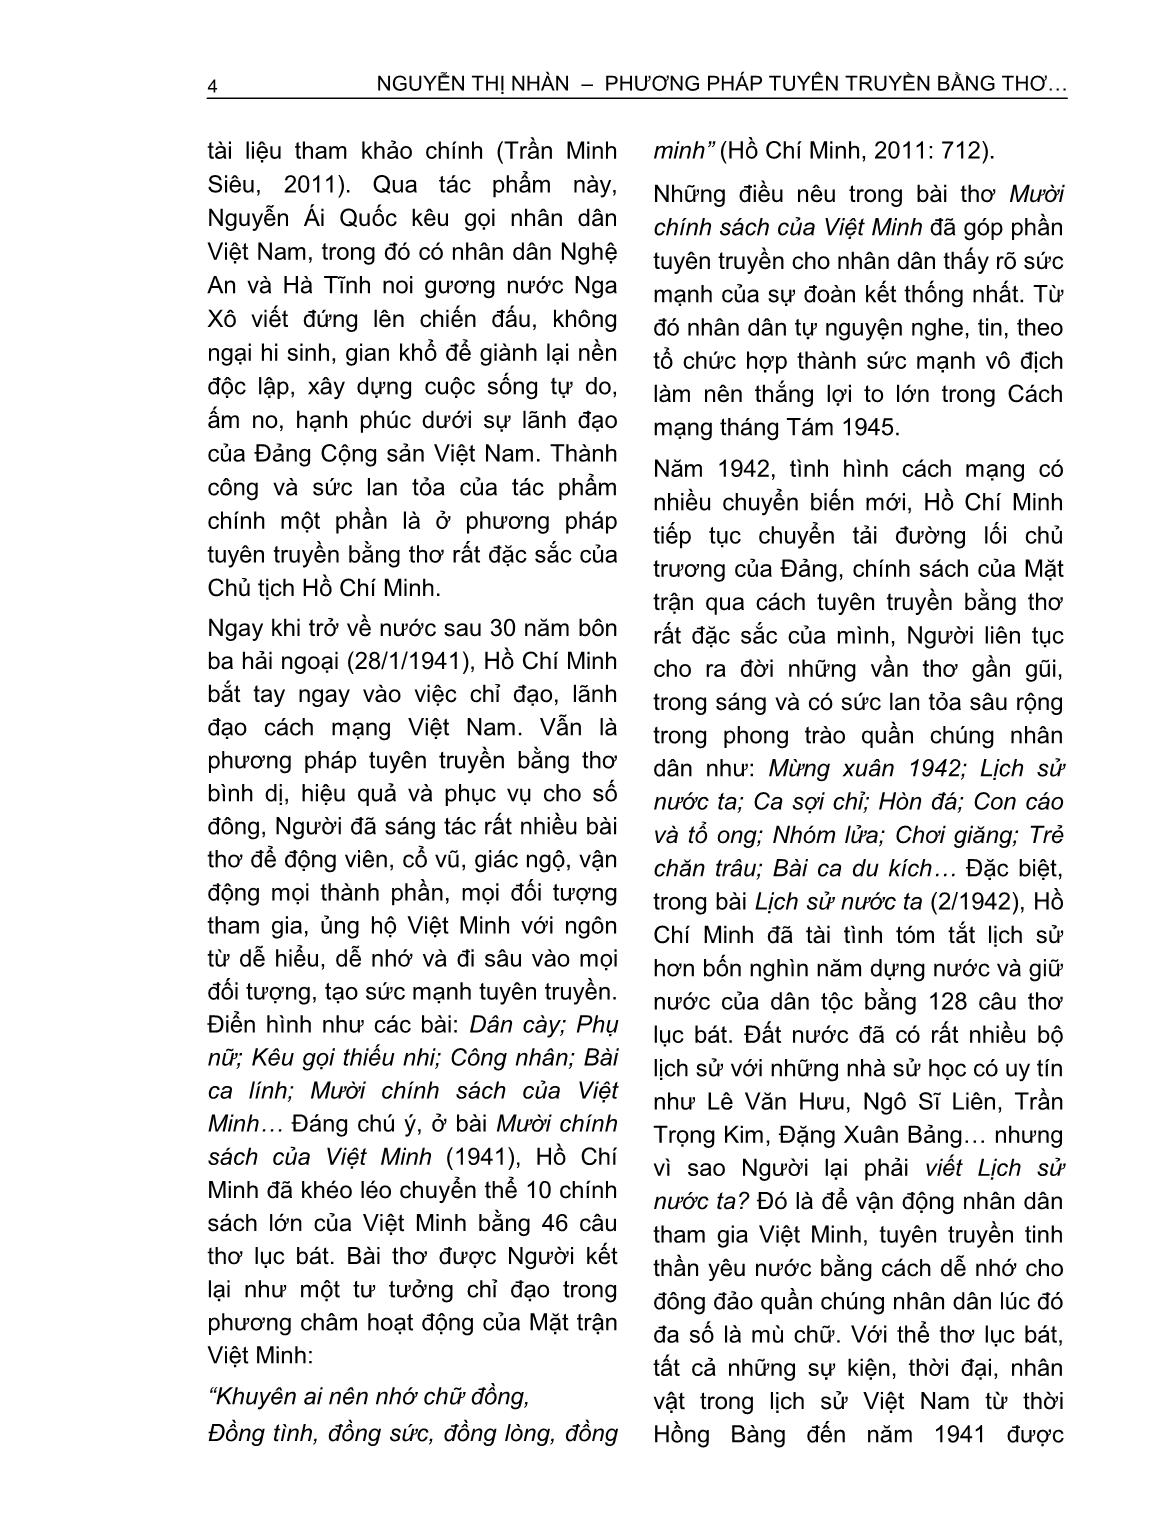 Phương pháp tuyên truyền bằng thơ của Hồ Chí Minh trang 4